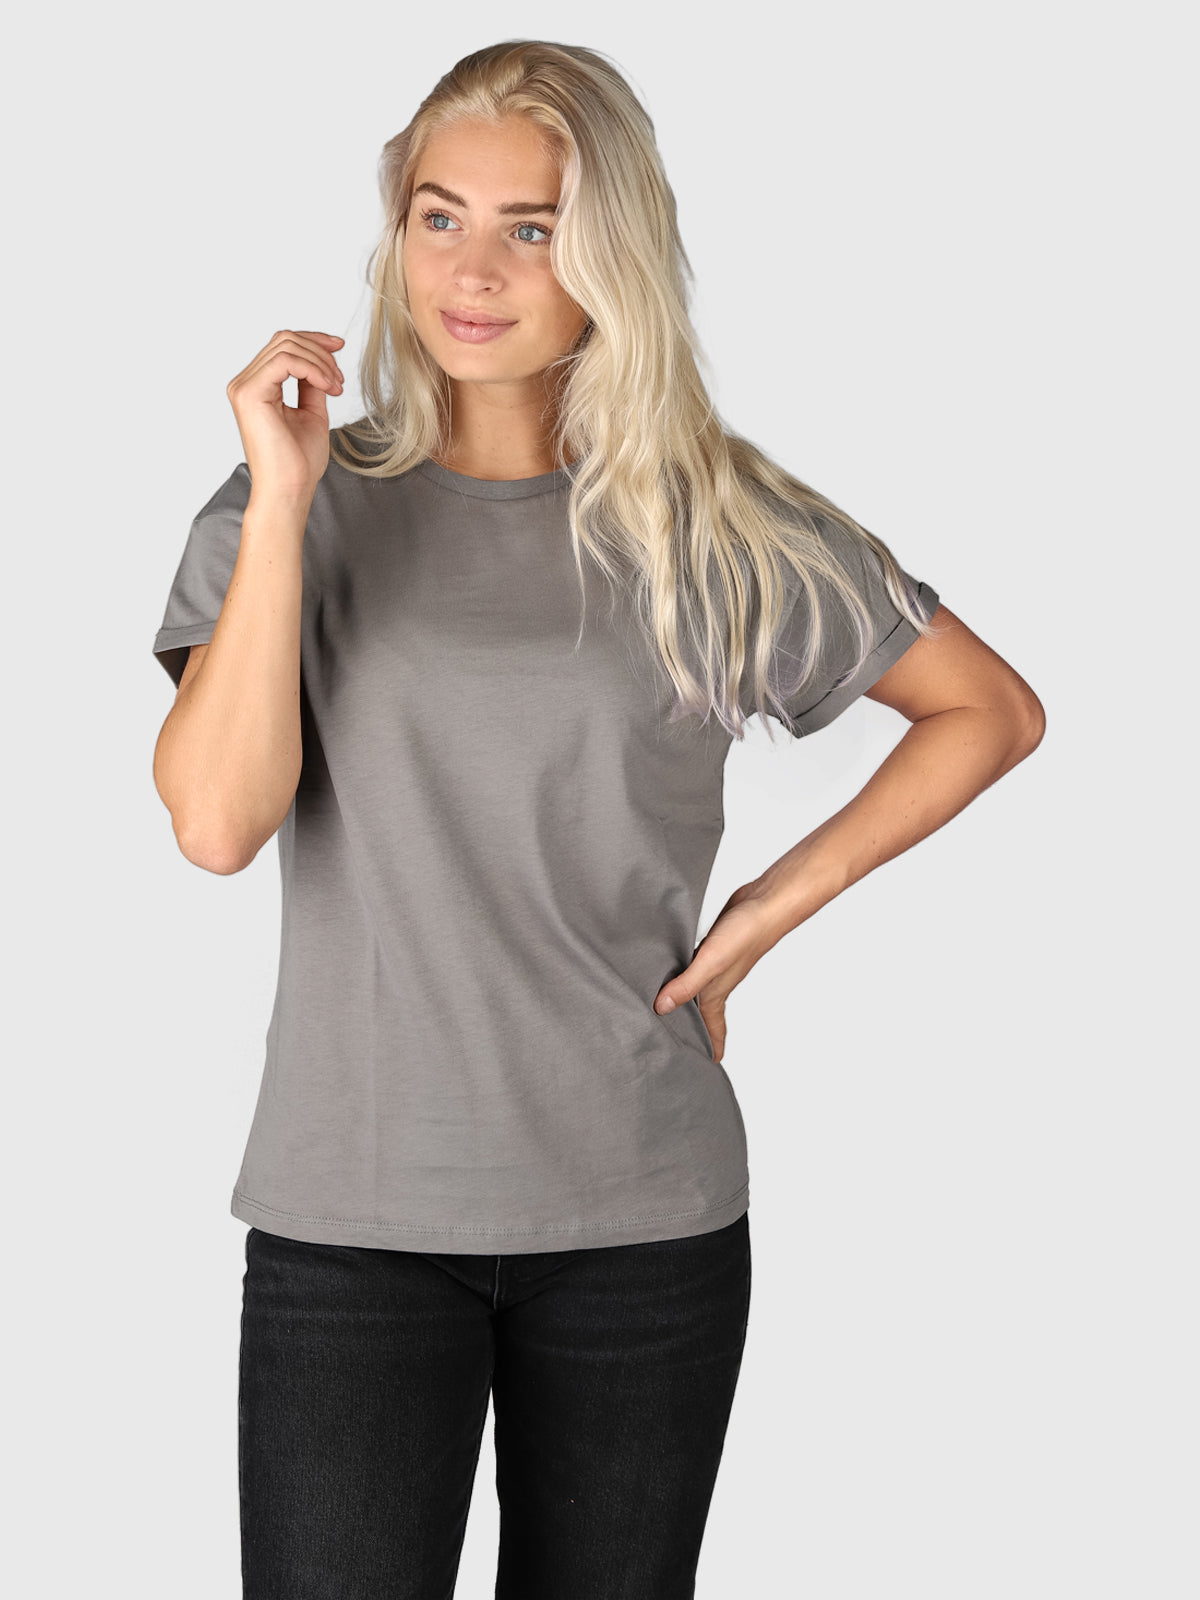 Samilla-R Damen T-shirt | Grau